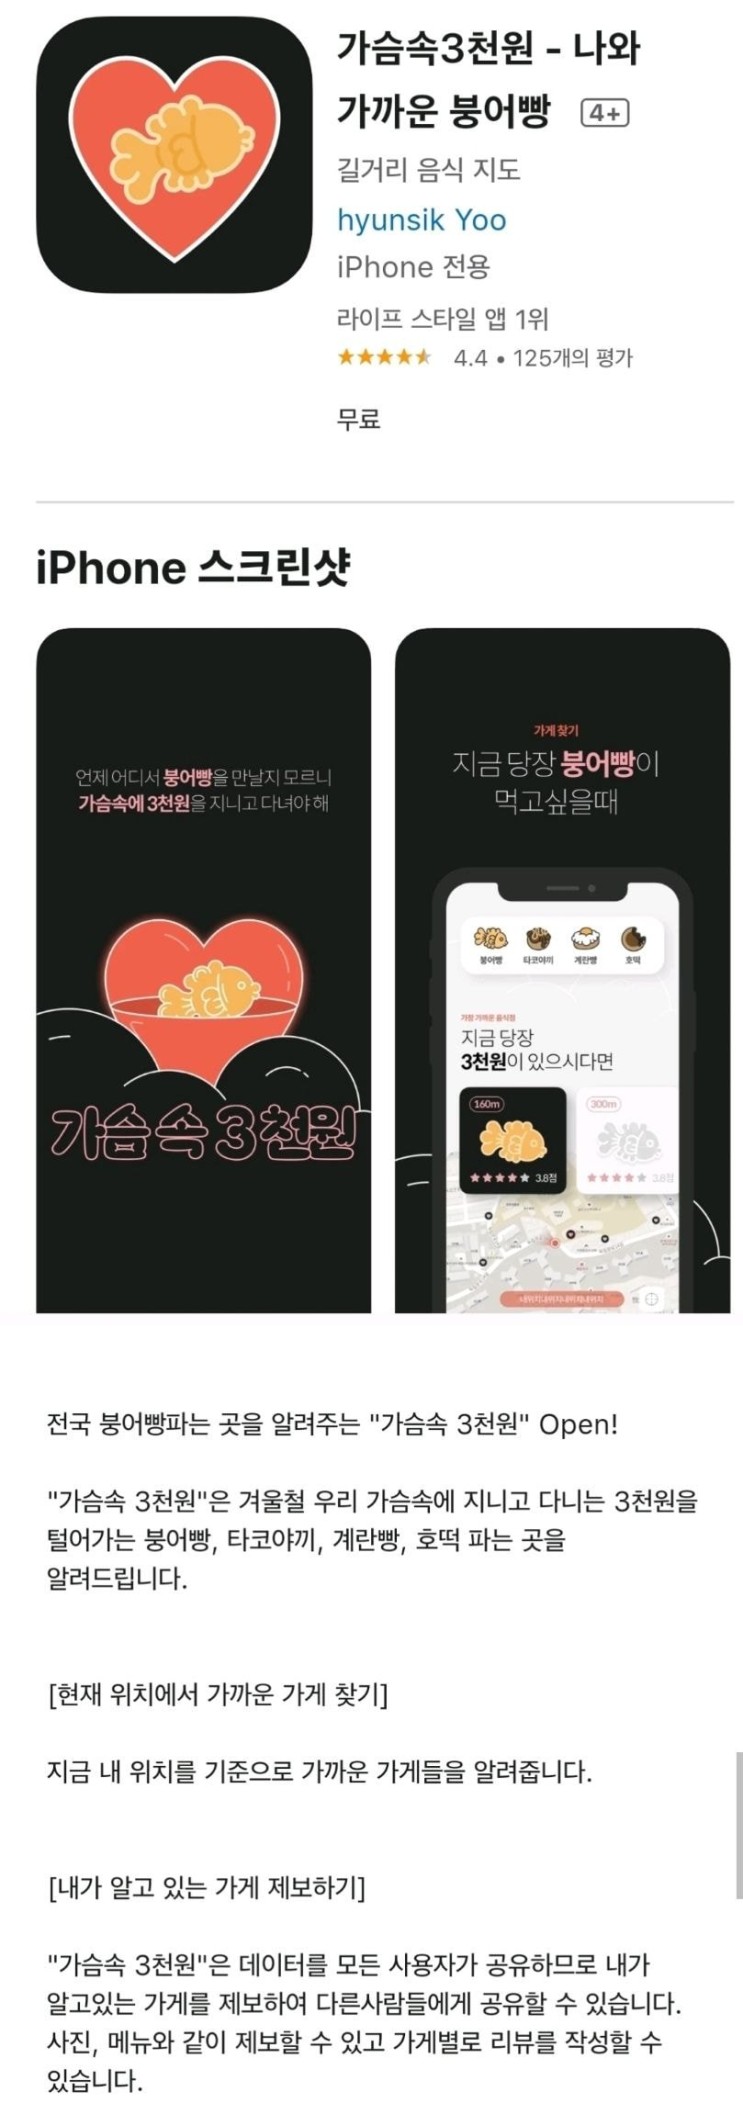 아이폰 라이프 스타일 1위 앱 가슴속3천원